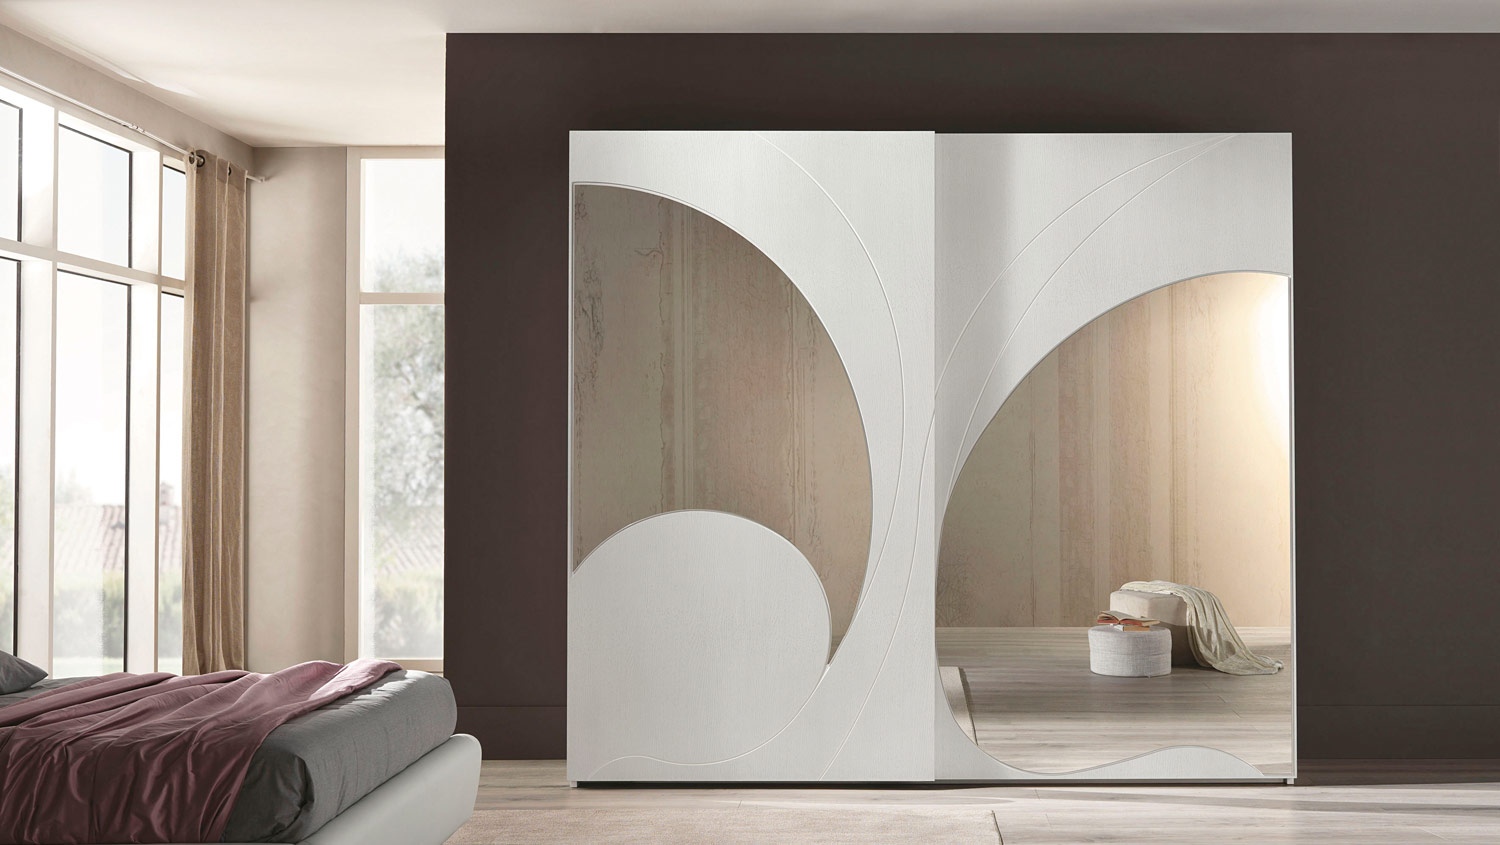 Collezione Armadi_modello Adone bianco frassino con specchi esterni e decoro incisione